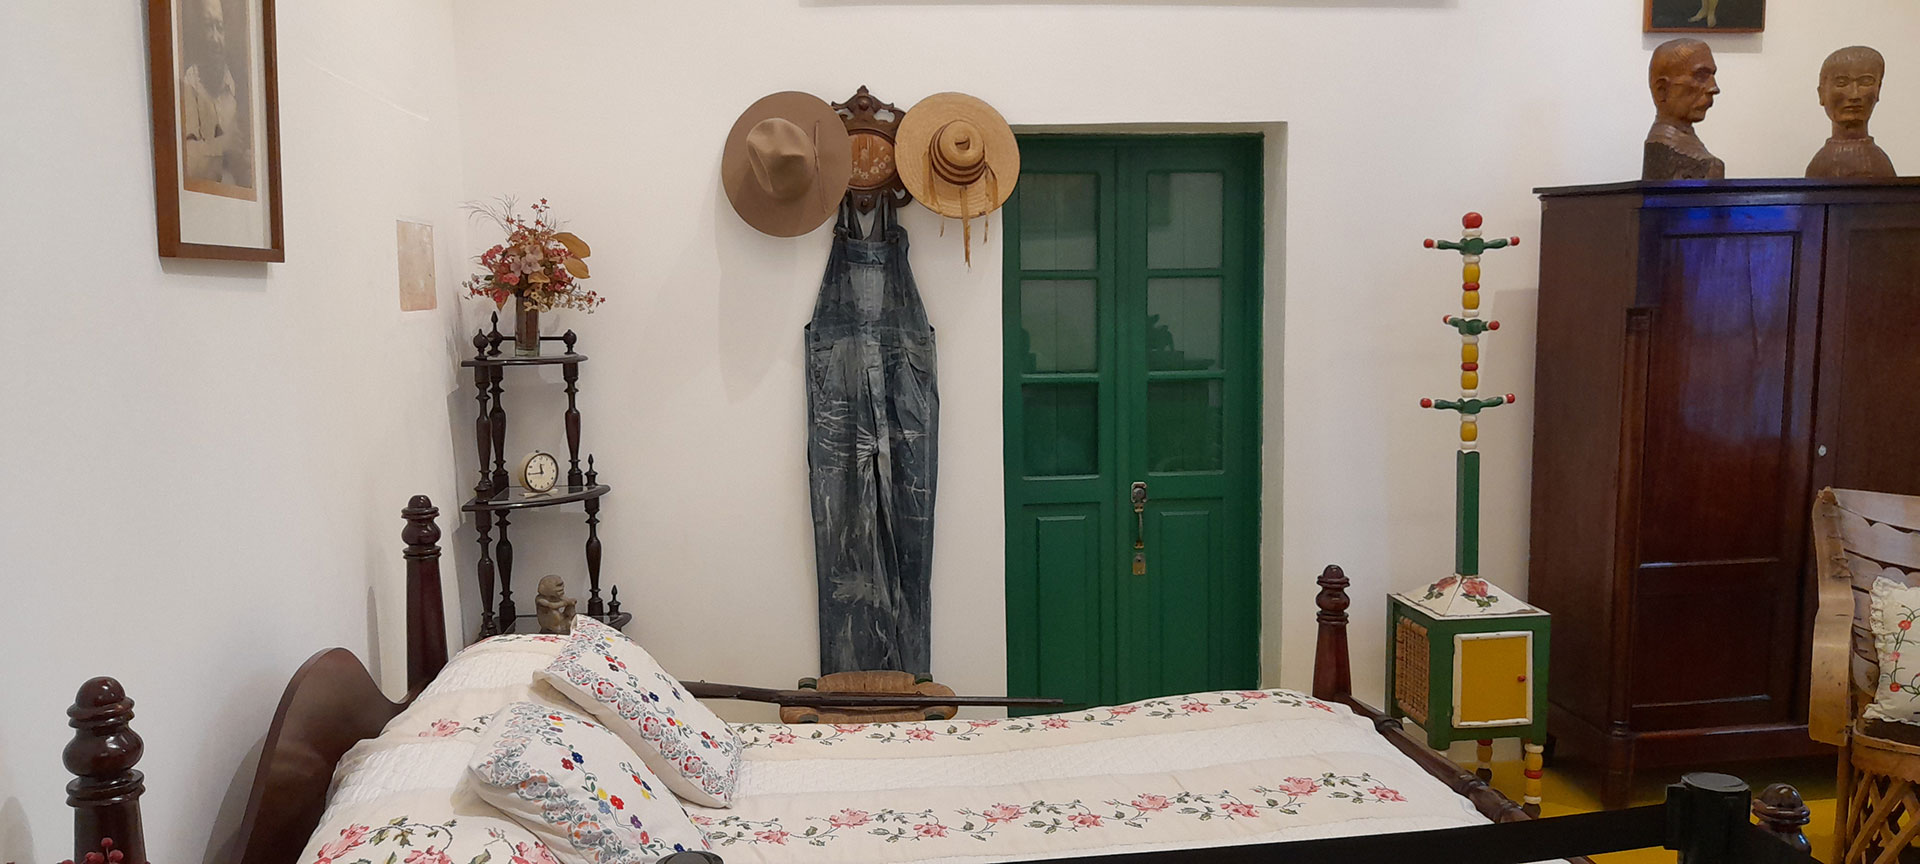 La habitación de Diego Rivera